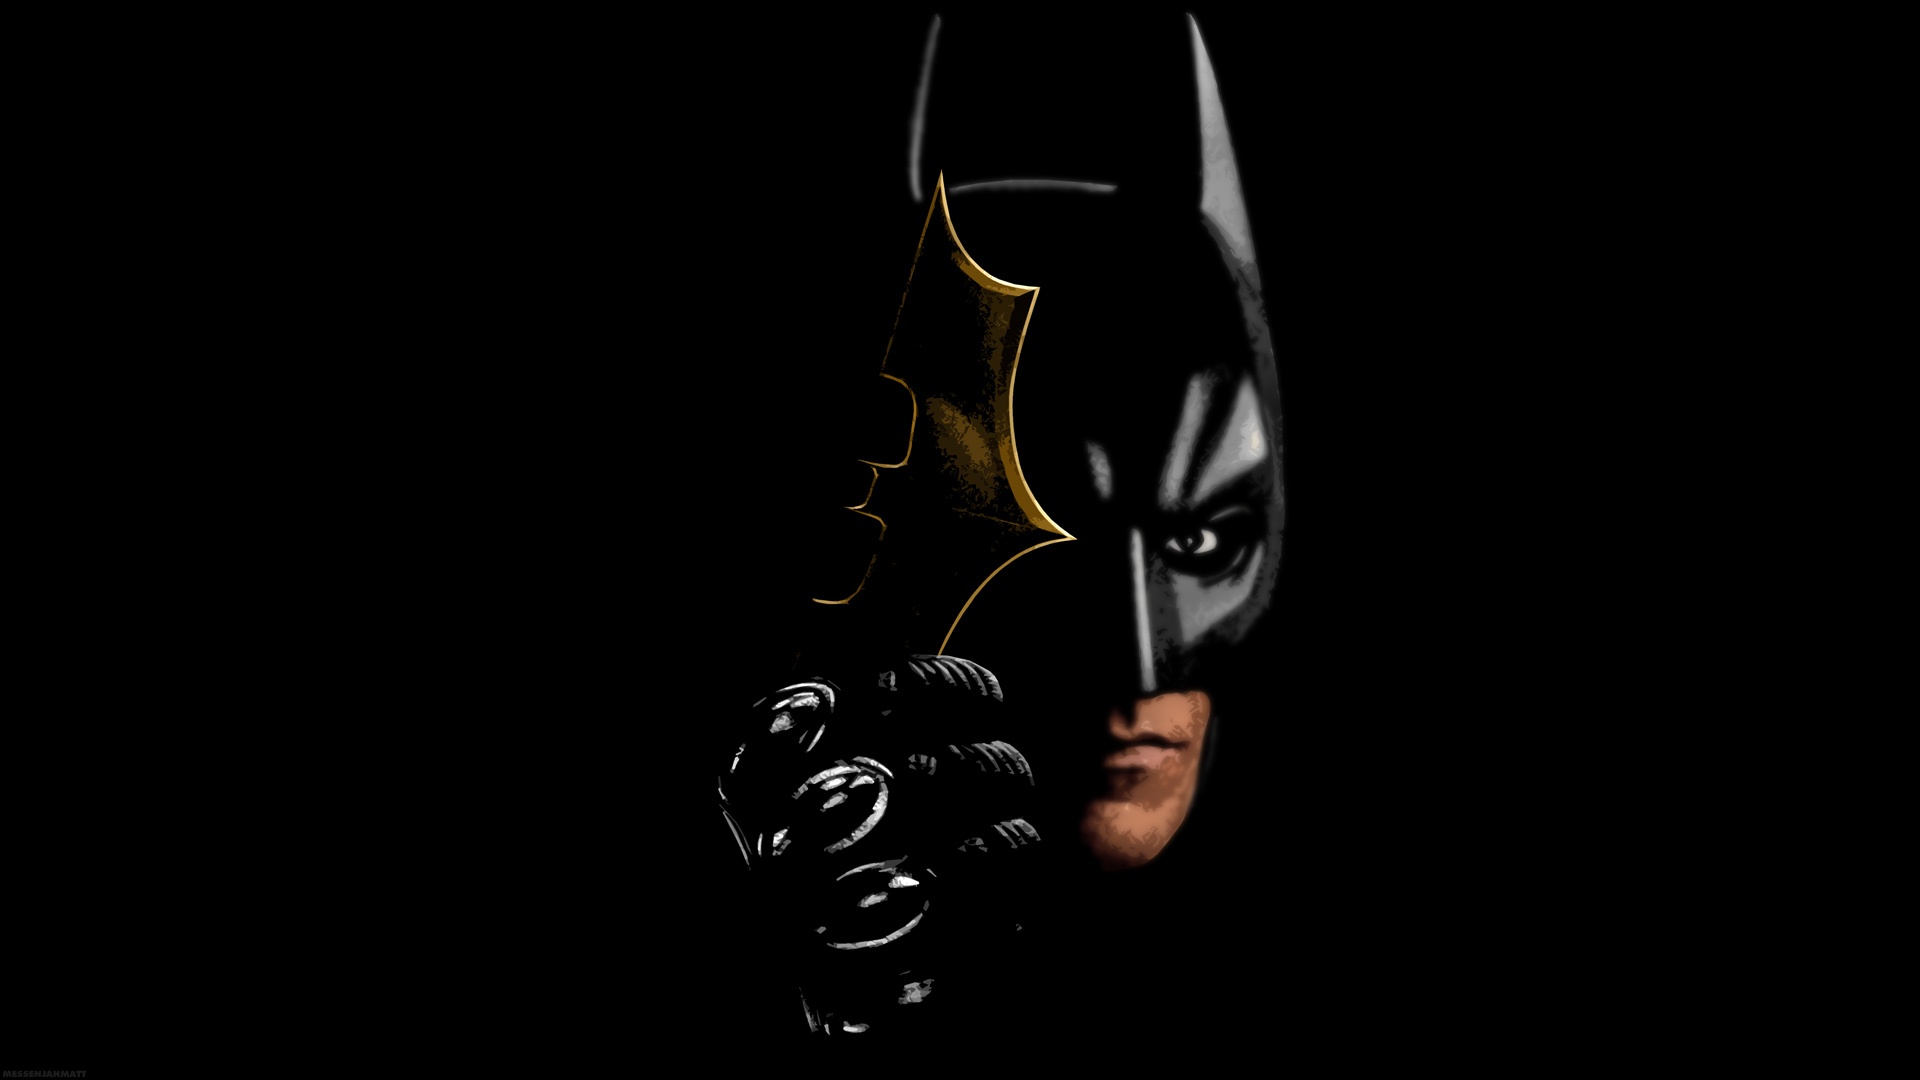 Descarga gratuita de fondo de pantalla para móvil de El Caballero Oscuro, Hombre Murciélago, The Batman, Películas.